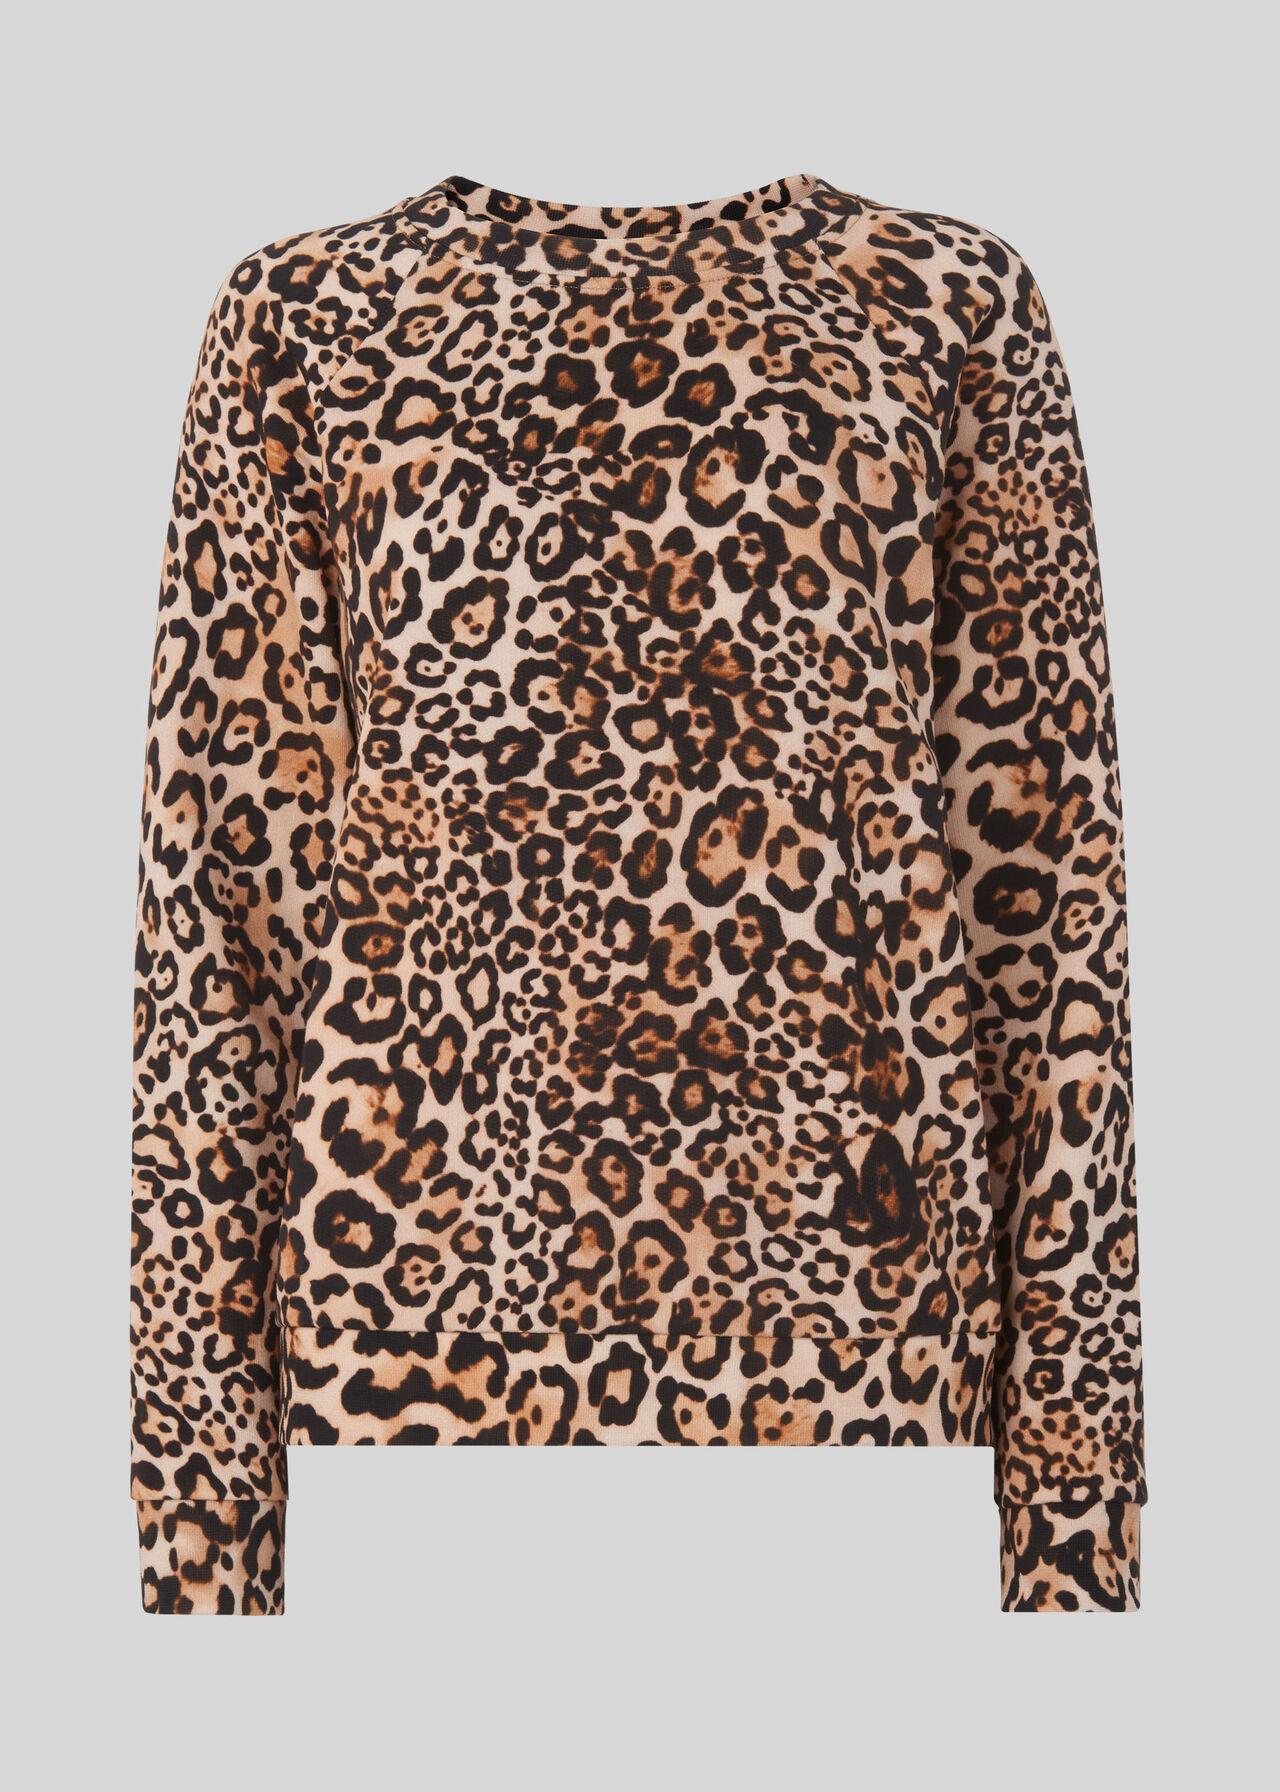 Leopard Print Sweatshirt Leopard Print